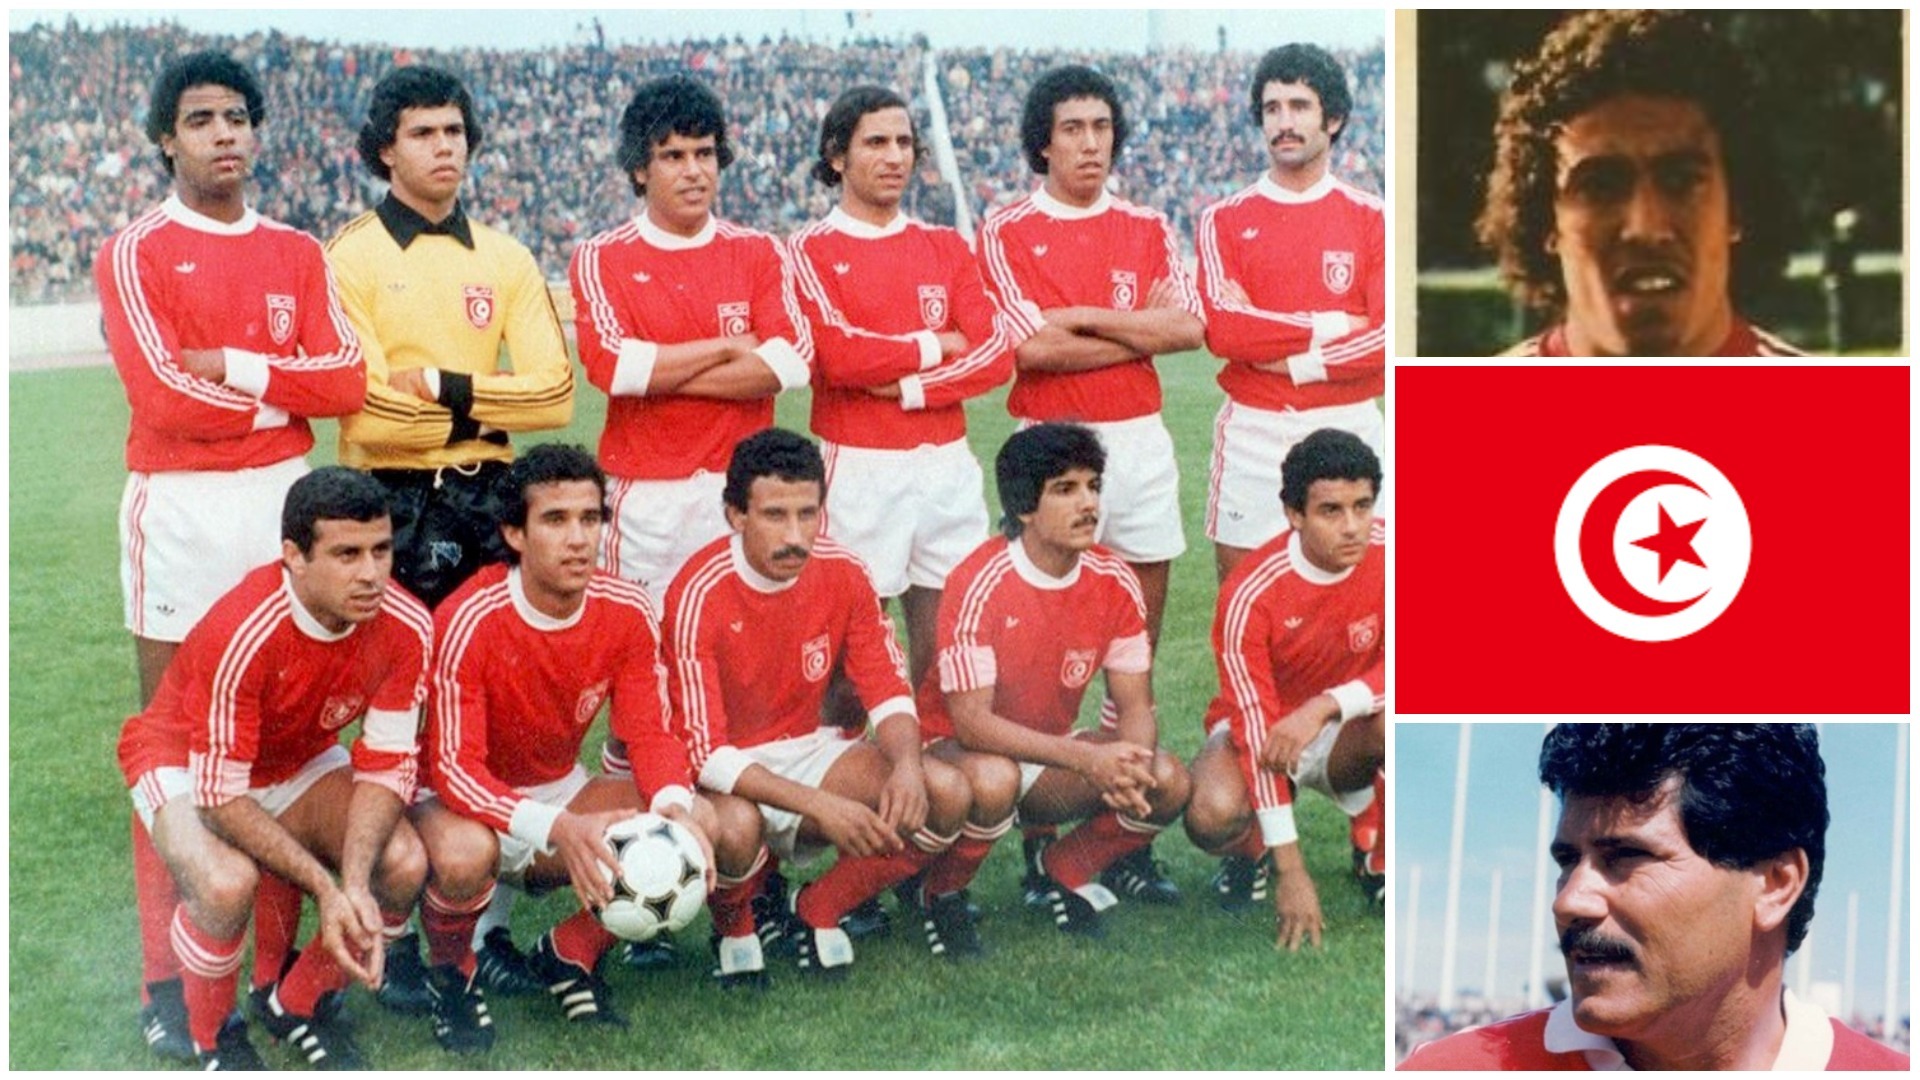 تونس والمونديال الأول في الأرجنتين 1978..الكعبي يفتح صندوق الذكريات